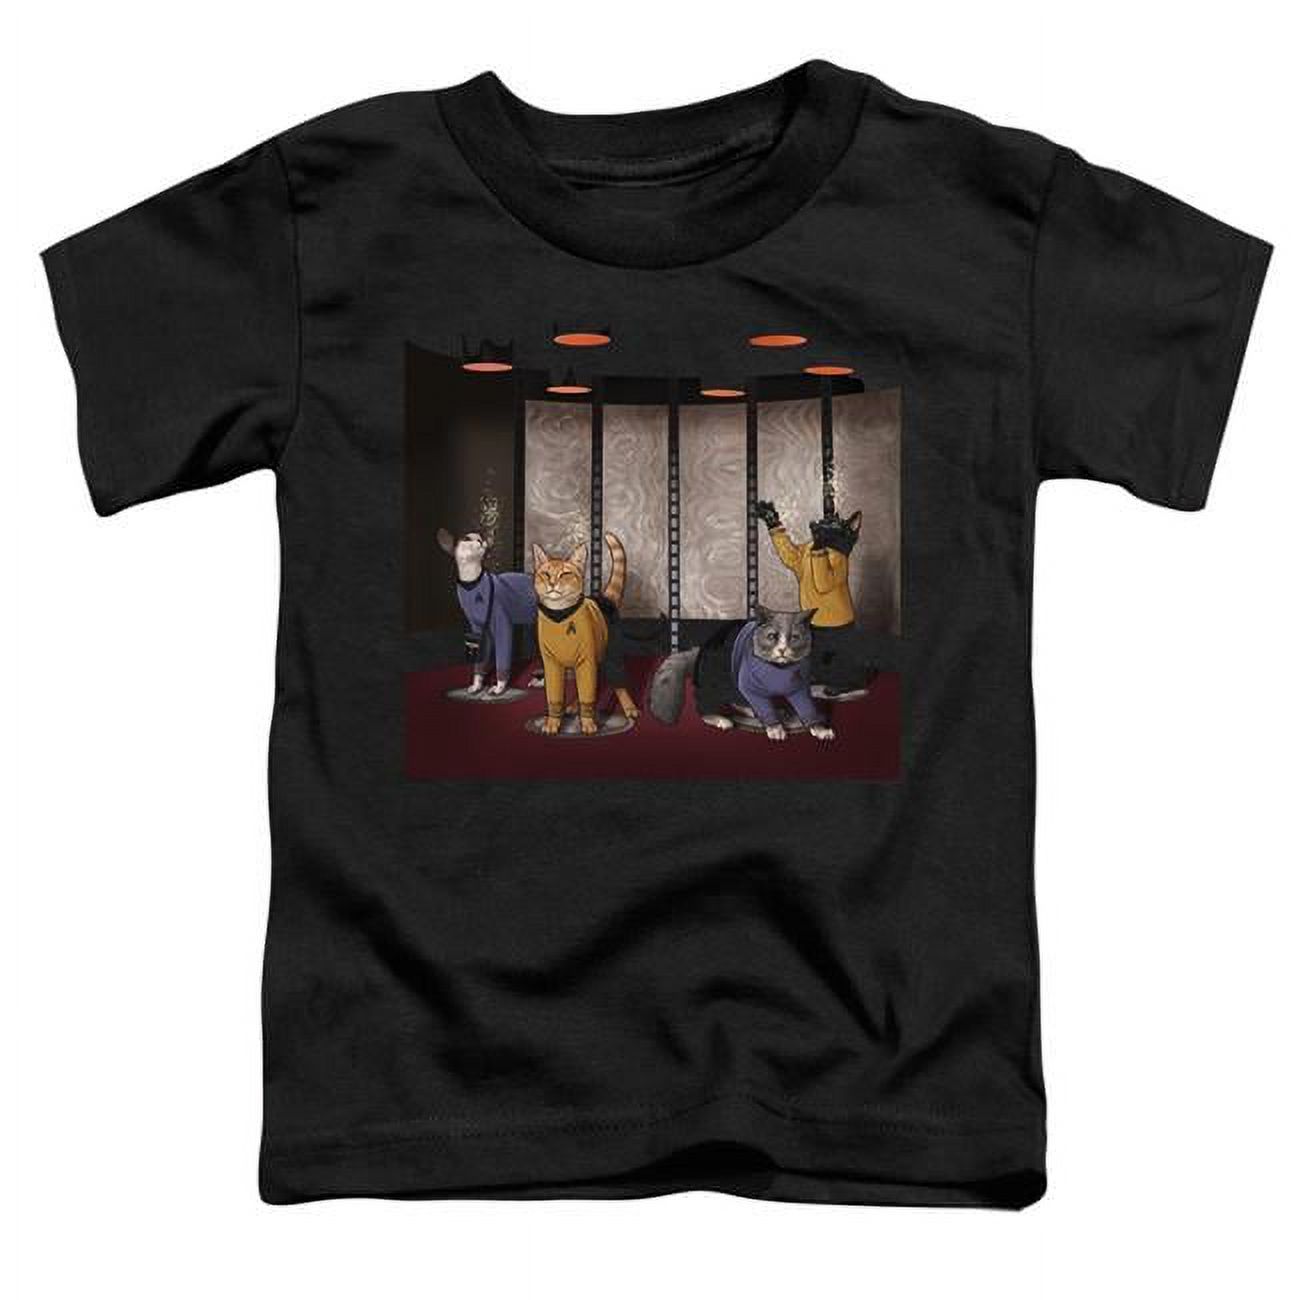 Trevco  CBS2550-TT-3 Star Trek & Beam Meow Up Toddler Short Sleeve T-Shirt, Black - Large 4T - image 1 of 1